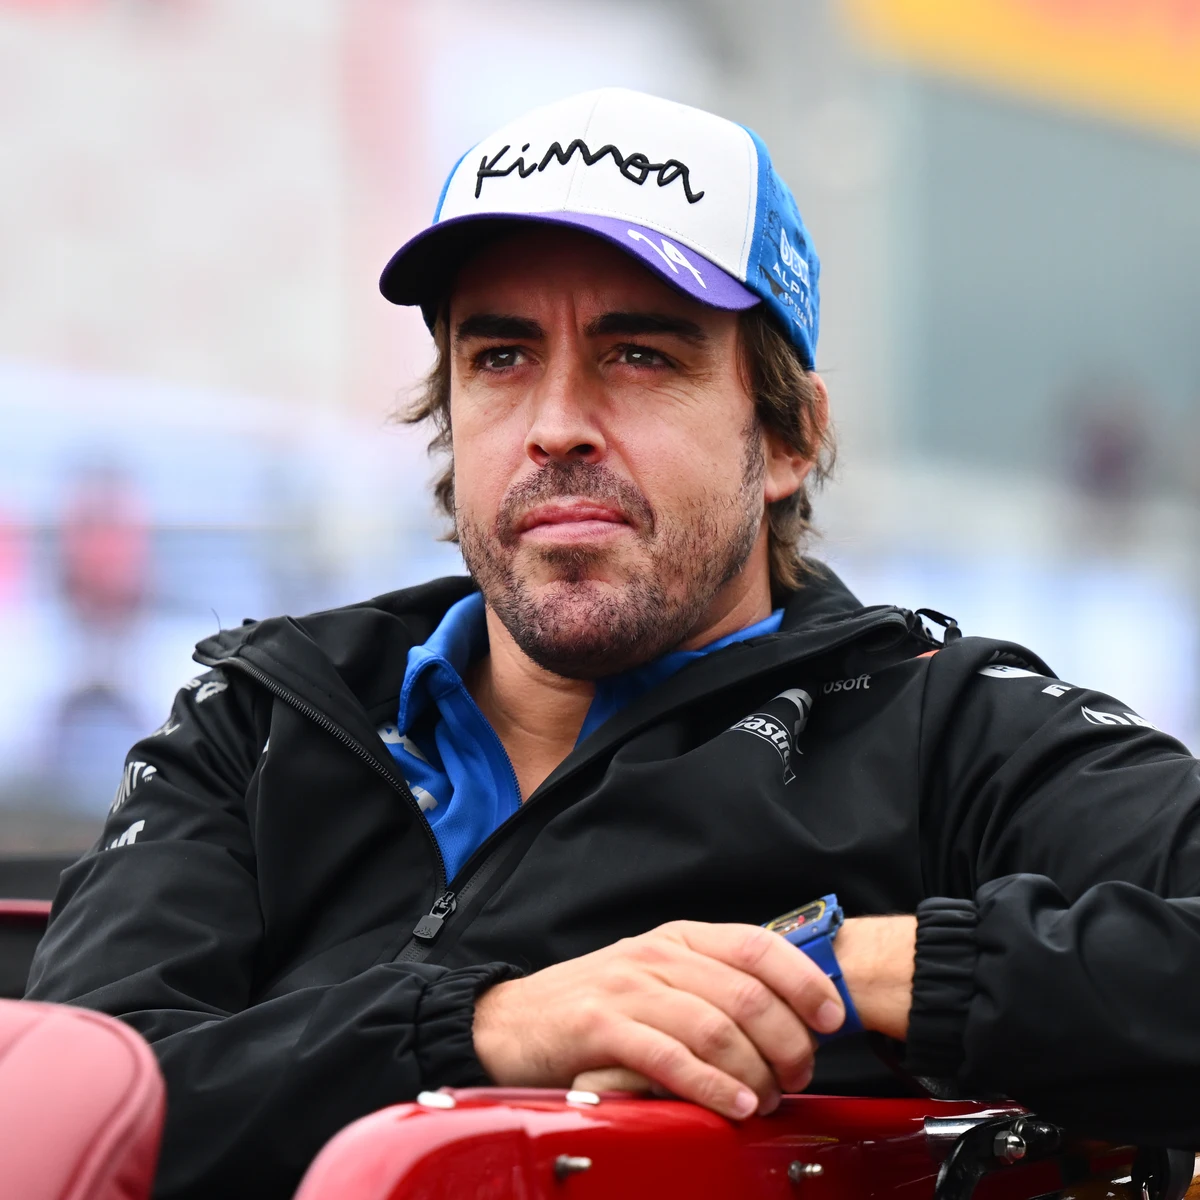 Aston Martin ya 'sufre' la locura por Fernando Alonso: su línea de ropa,  agotada en horas